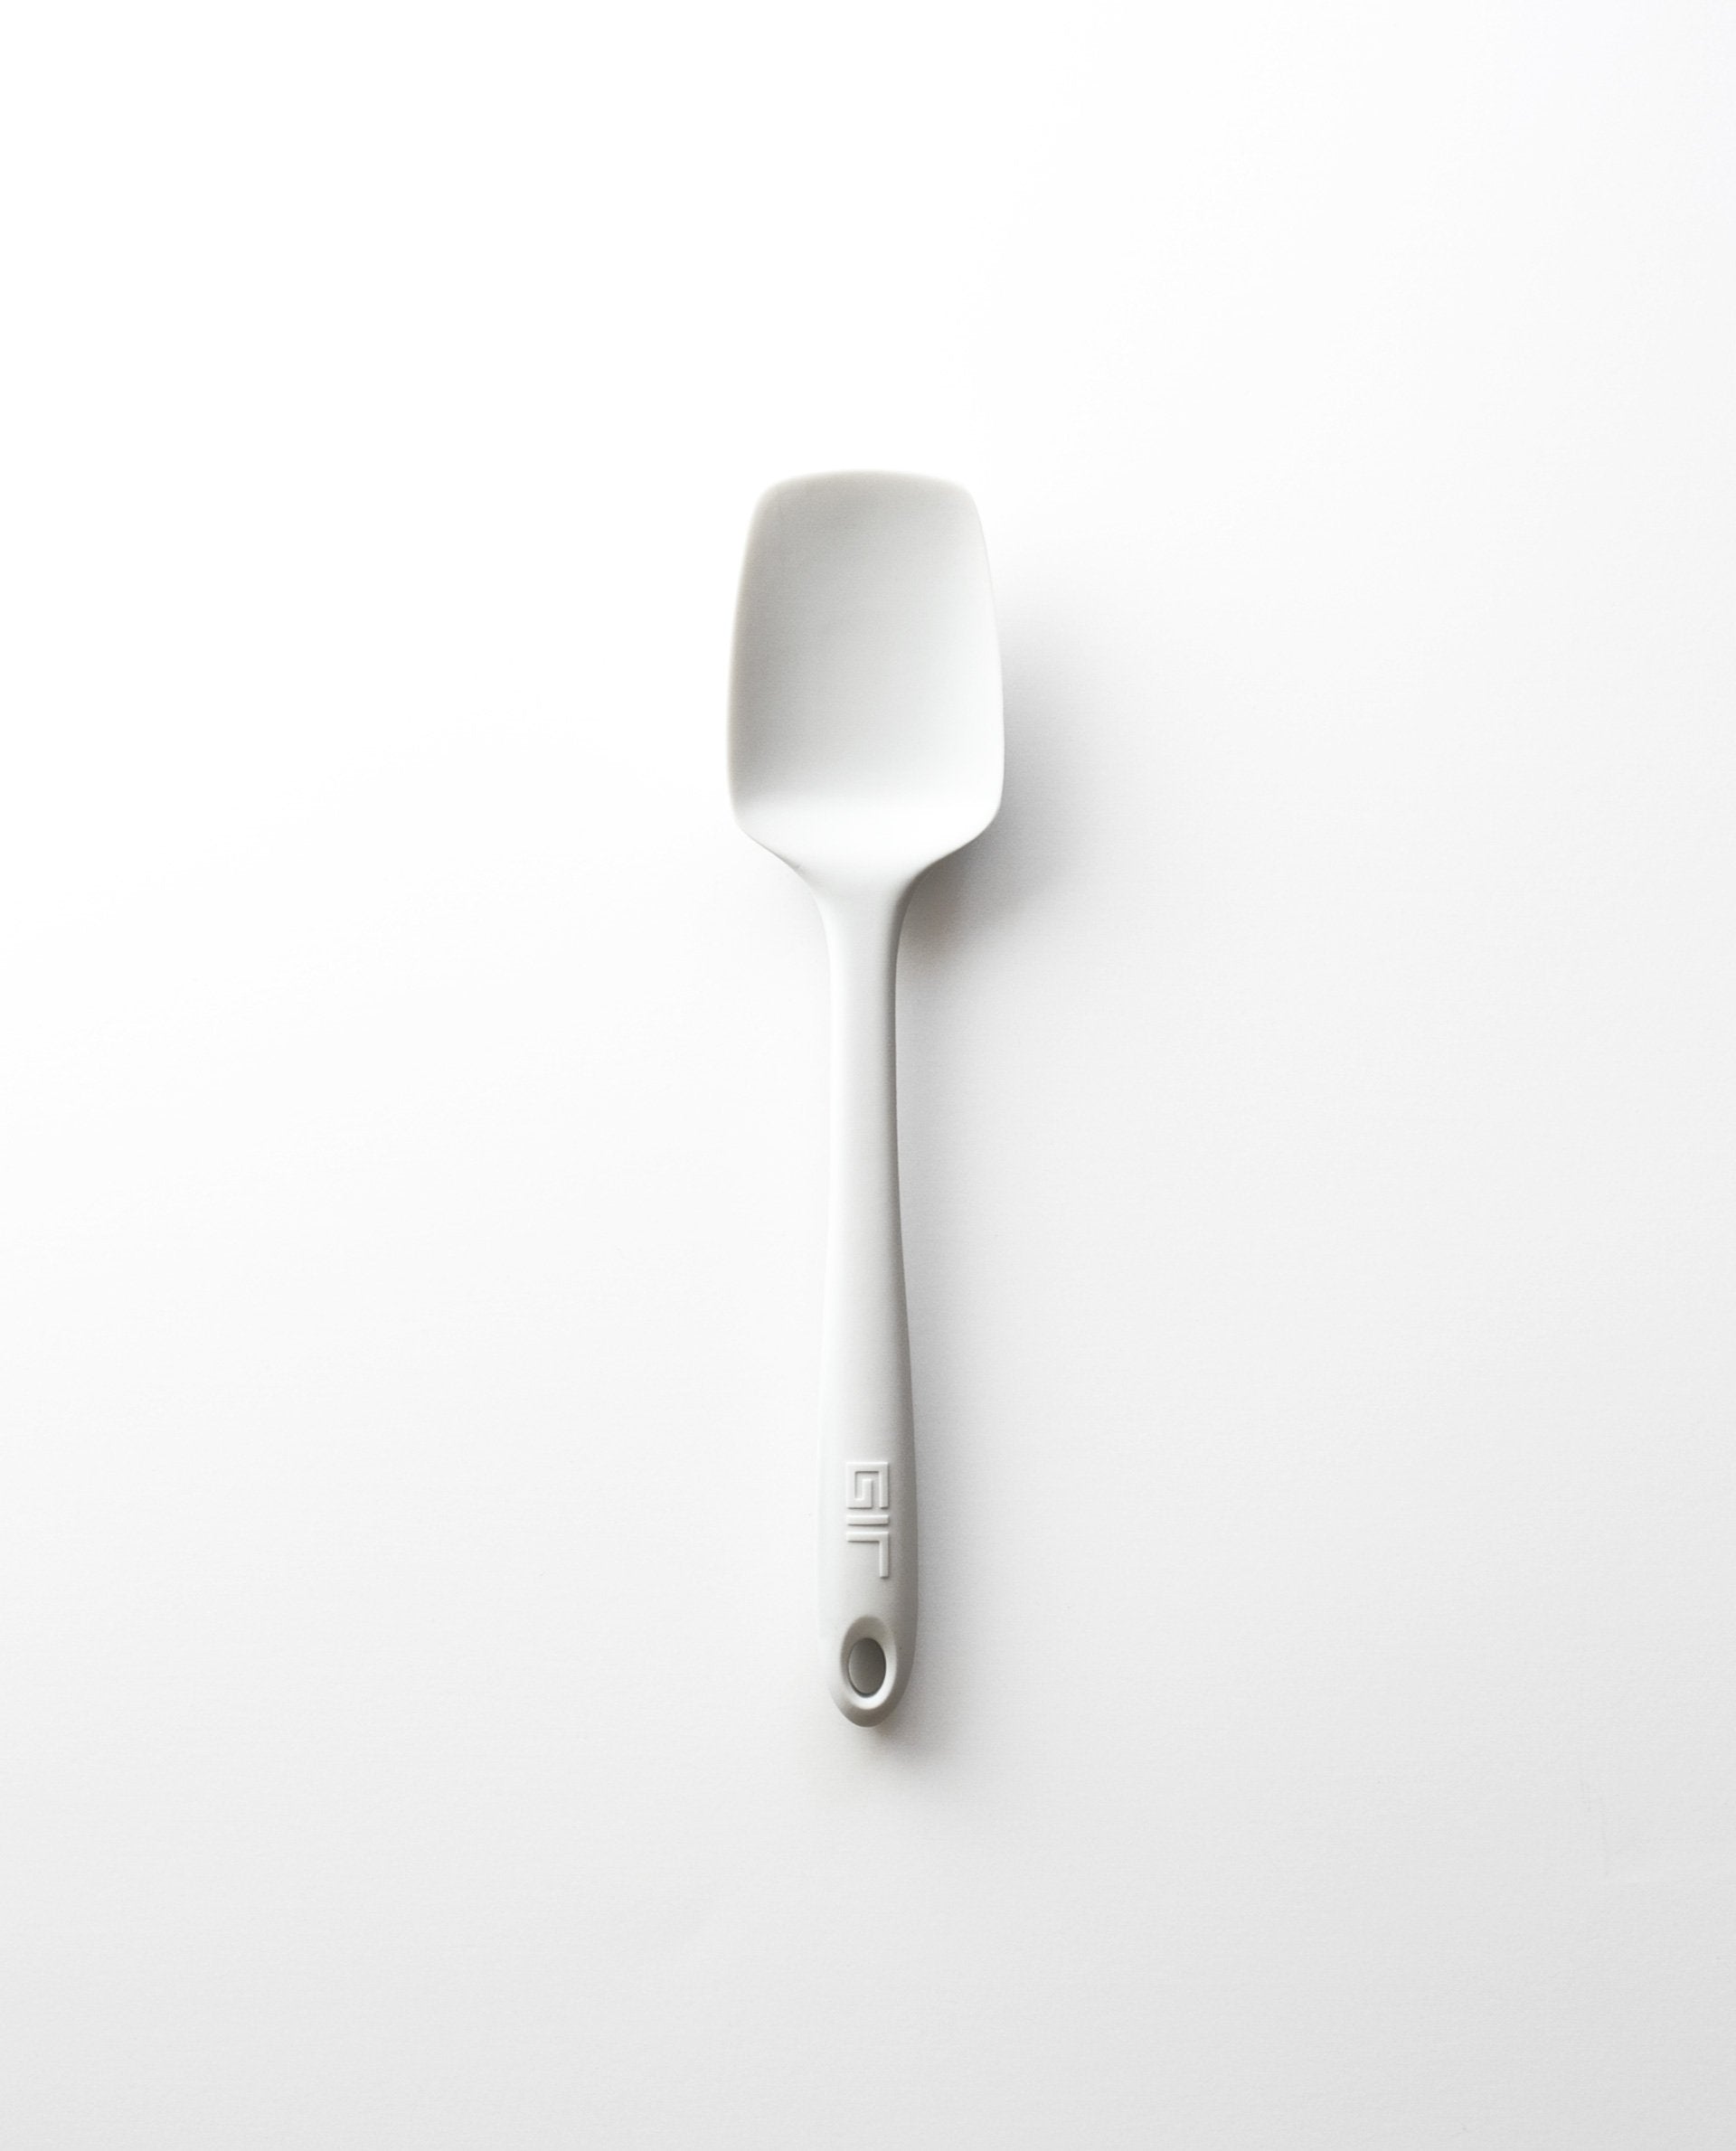 GIR Skinny Spoonula: Studio White 